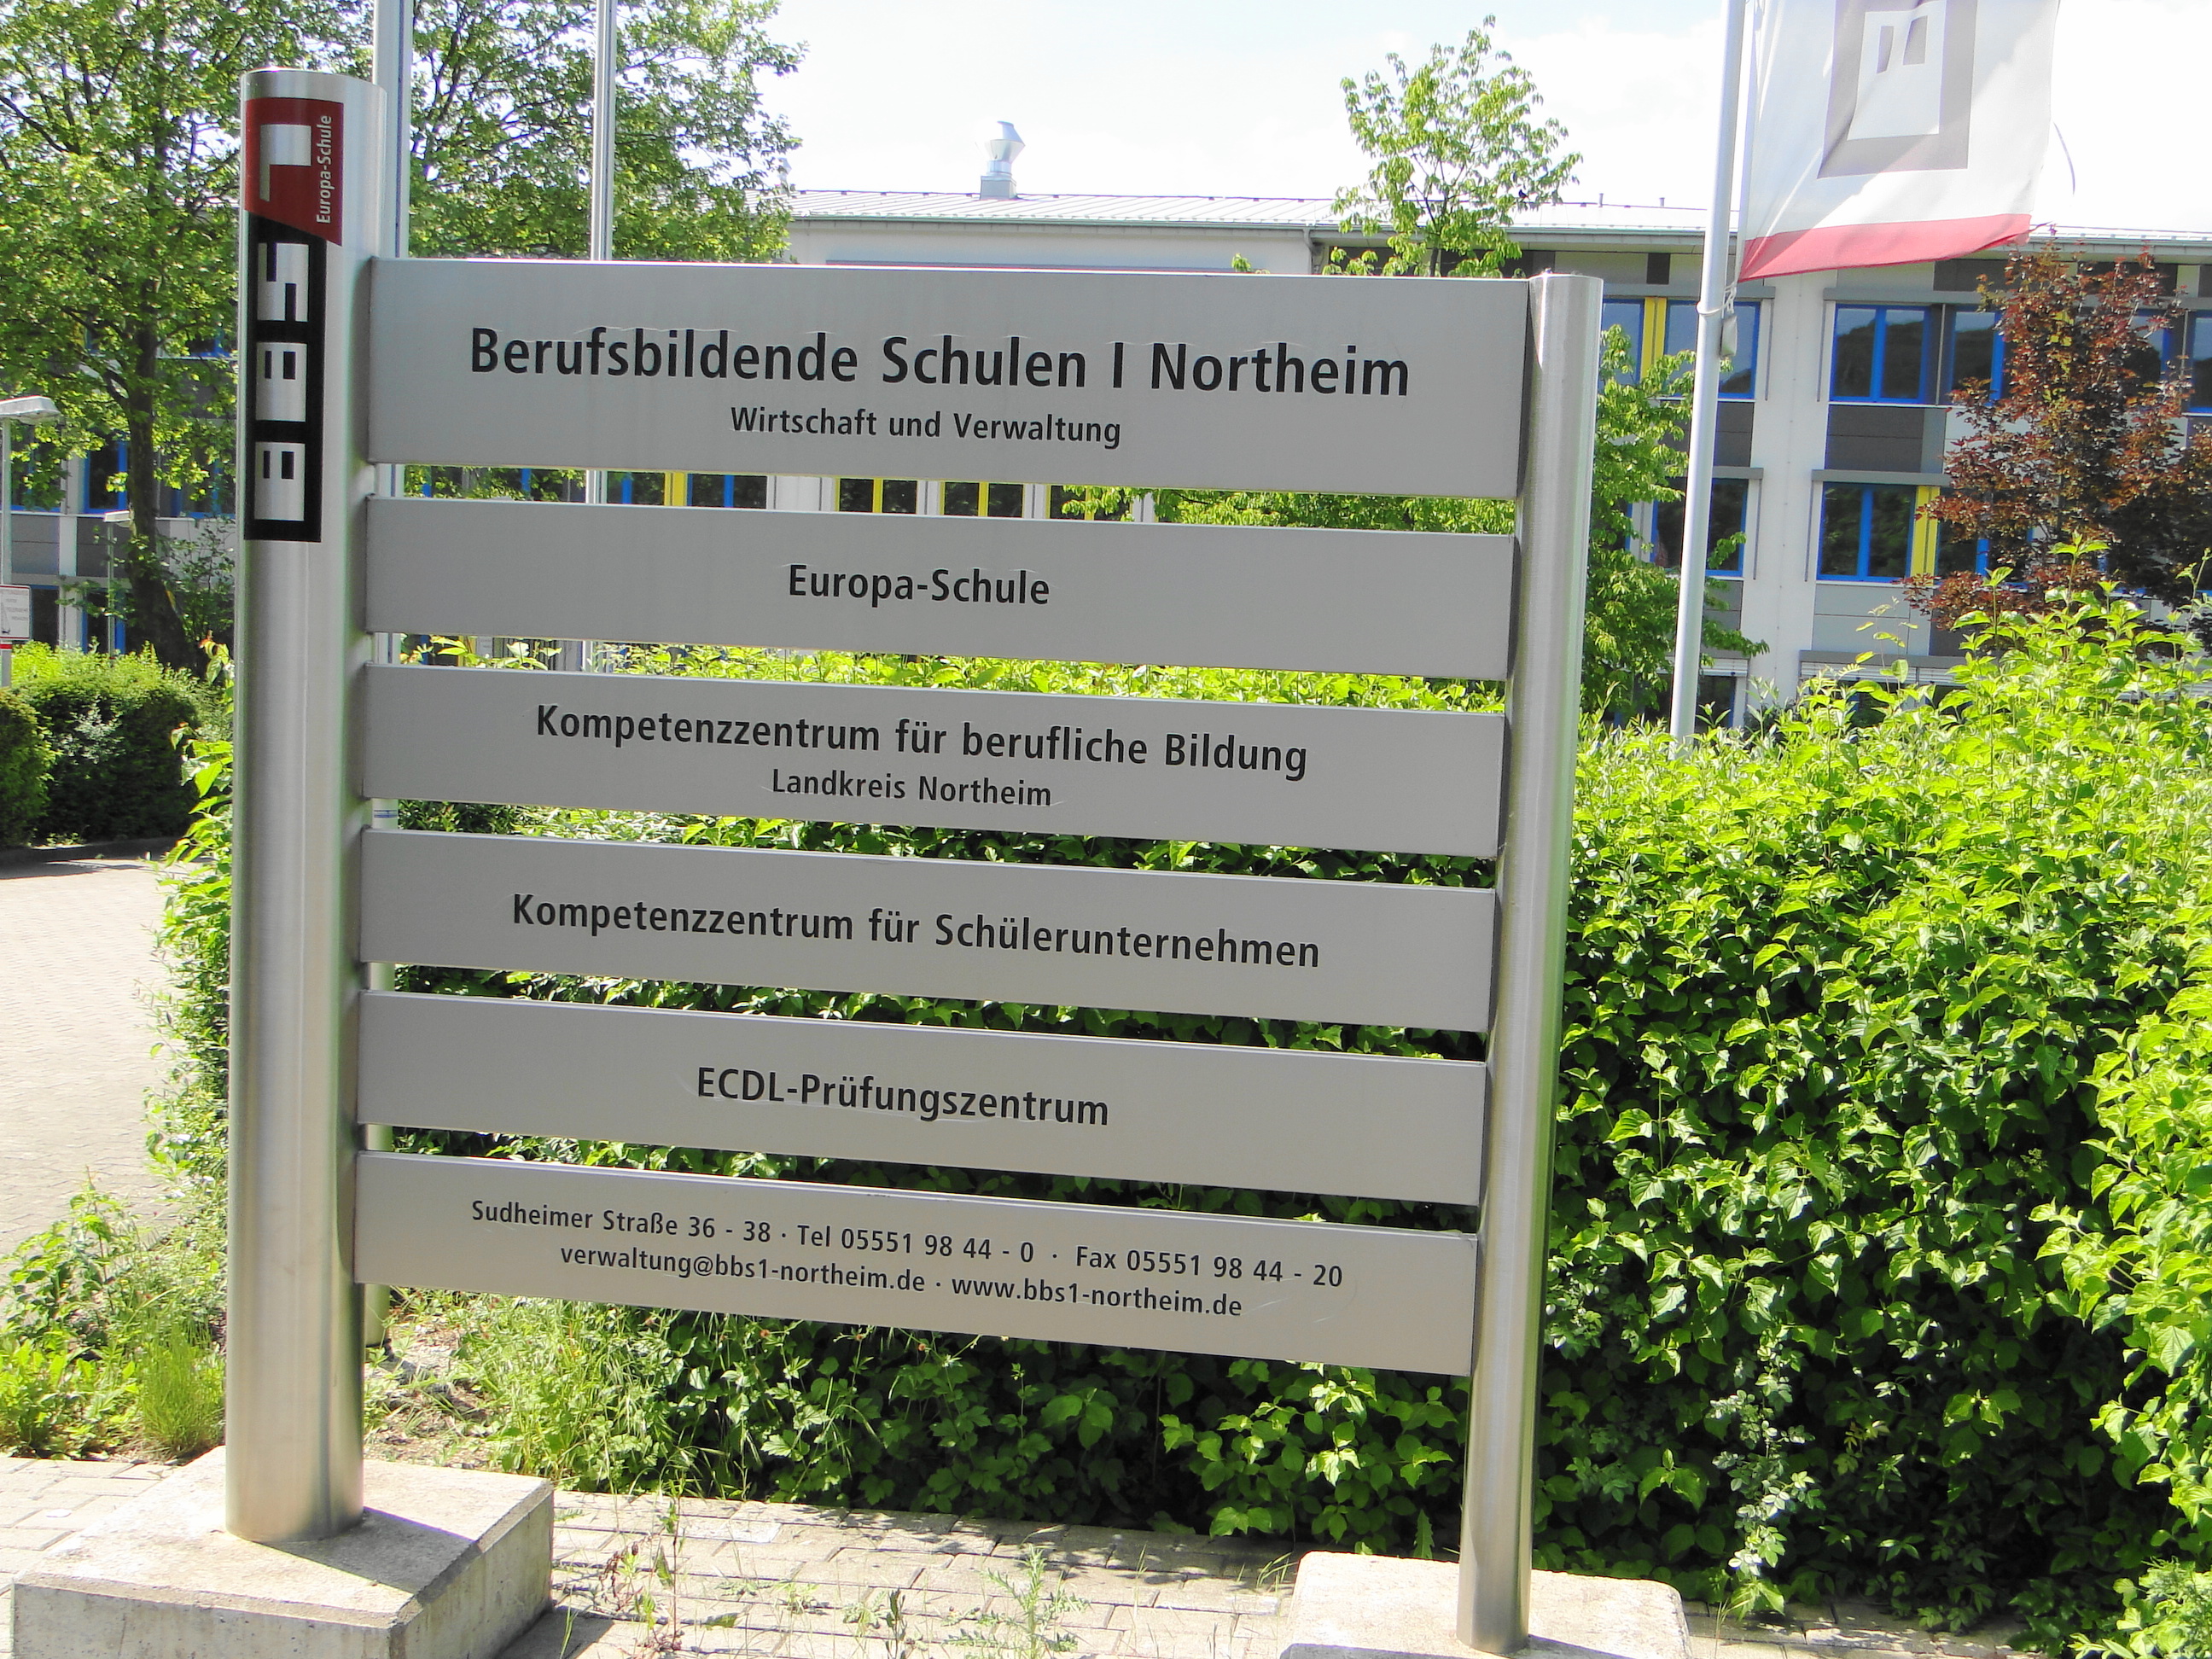 Europa-Schule BBS I Berufsbildende Schulen 1 Northeim  für Wirtschaft und Verwaltung in der Sudheimer Str. 36, Infotafel vor der Schule